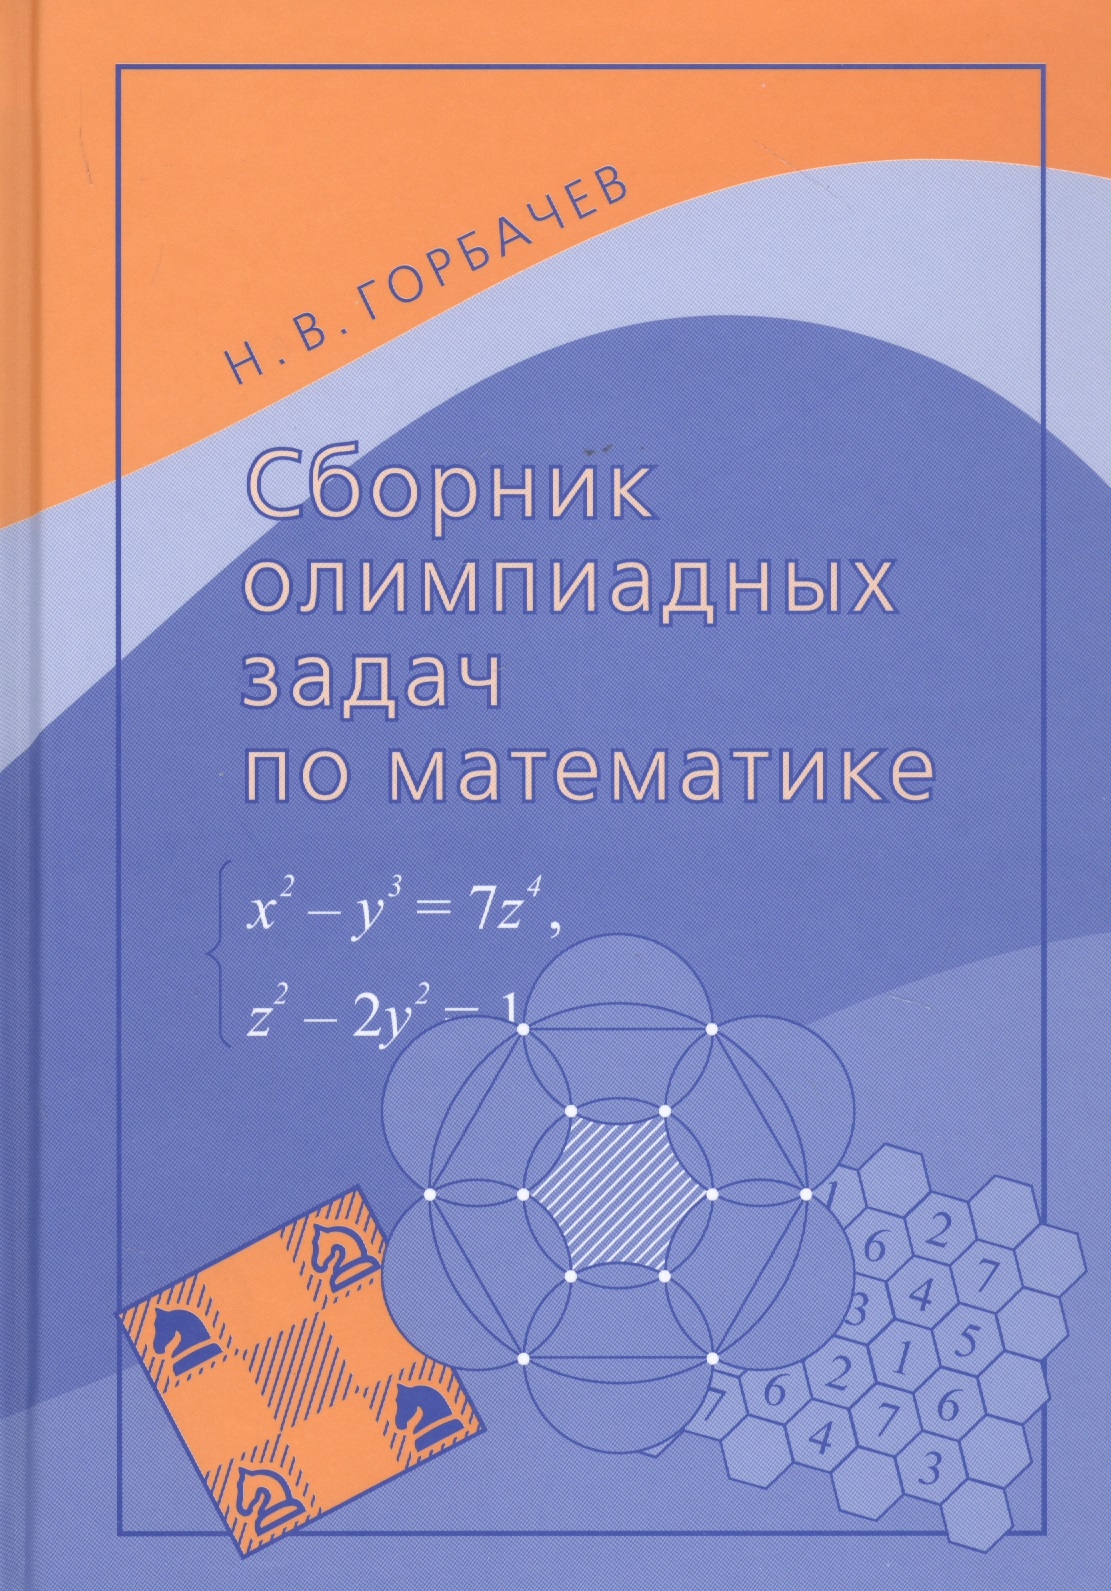 Горбачев Николай Васильевич - Сборник олимпиадных задач по математике